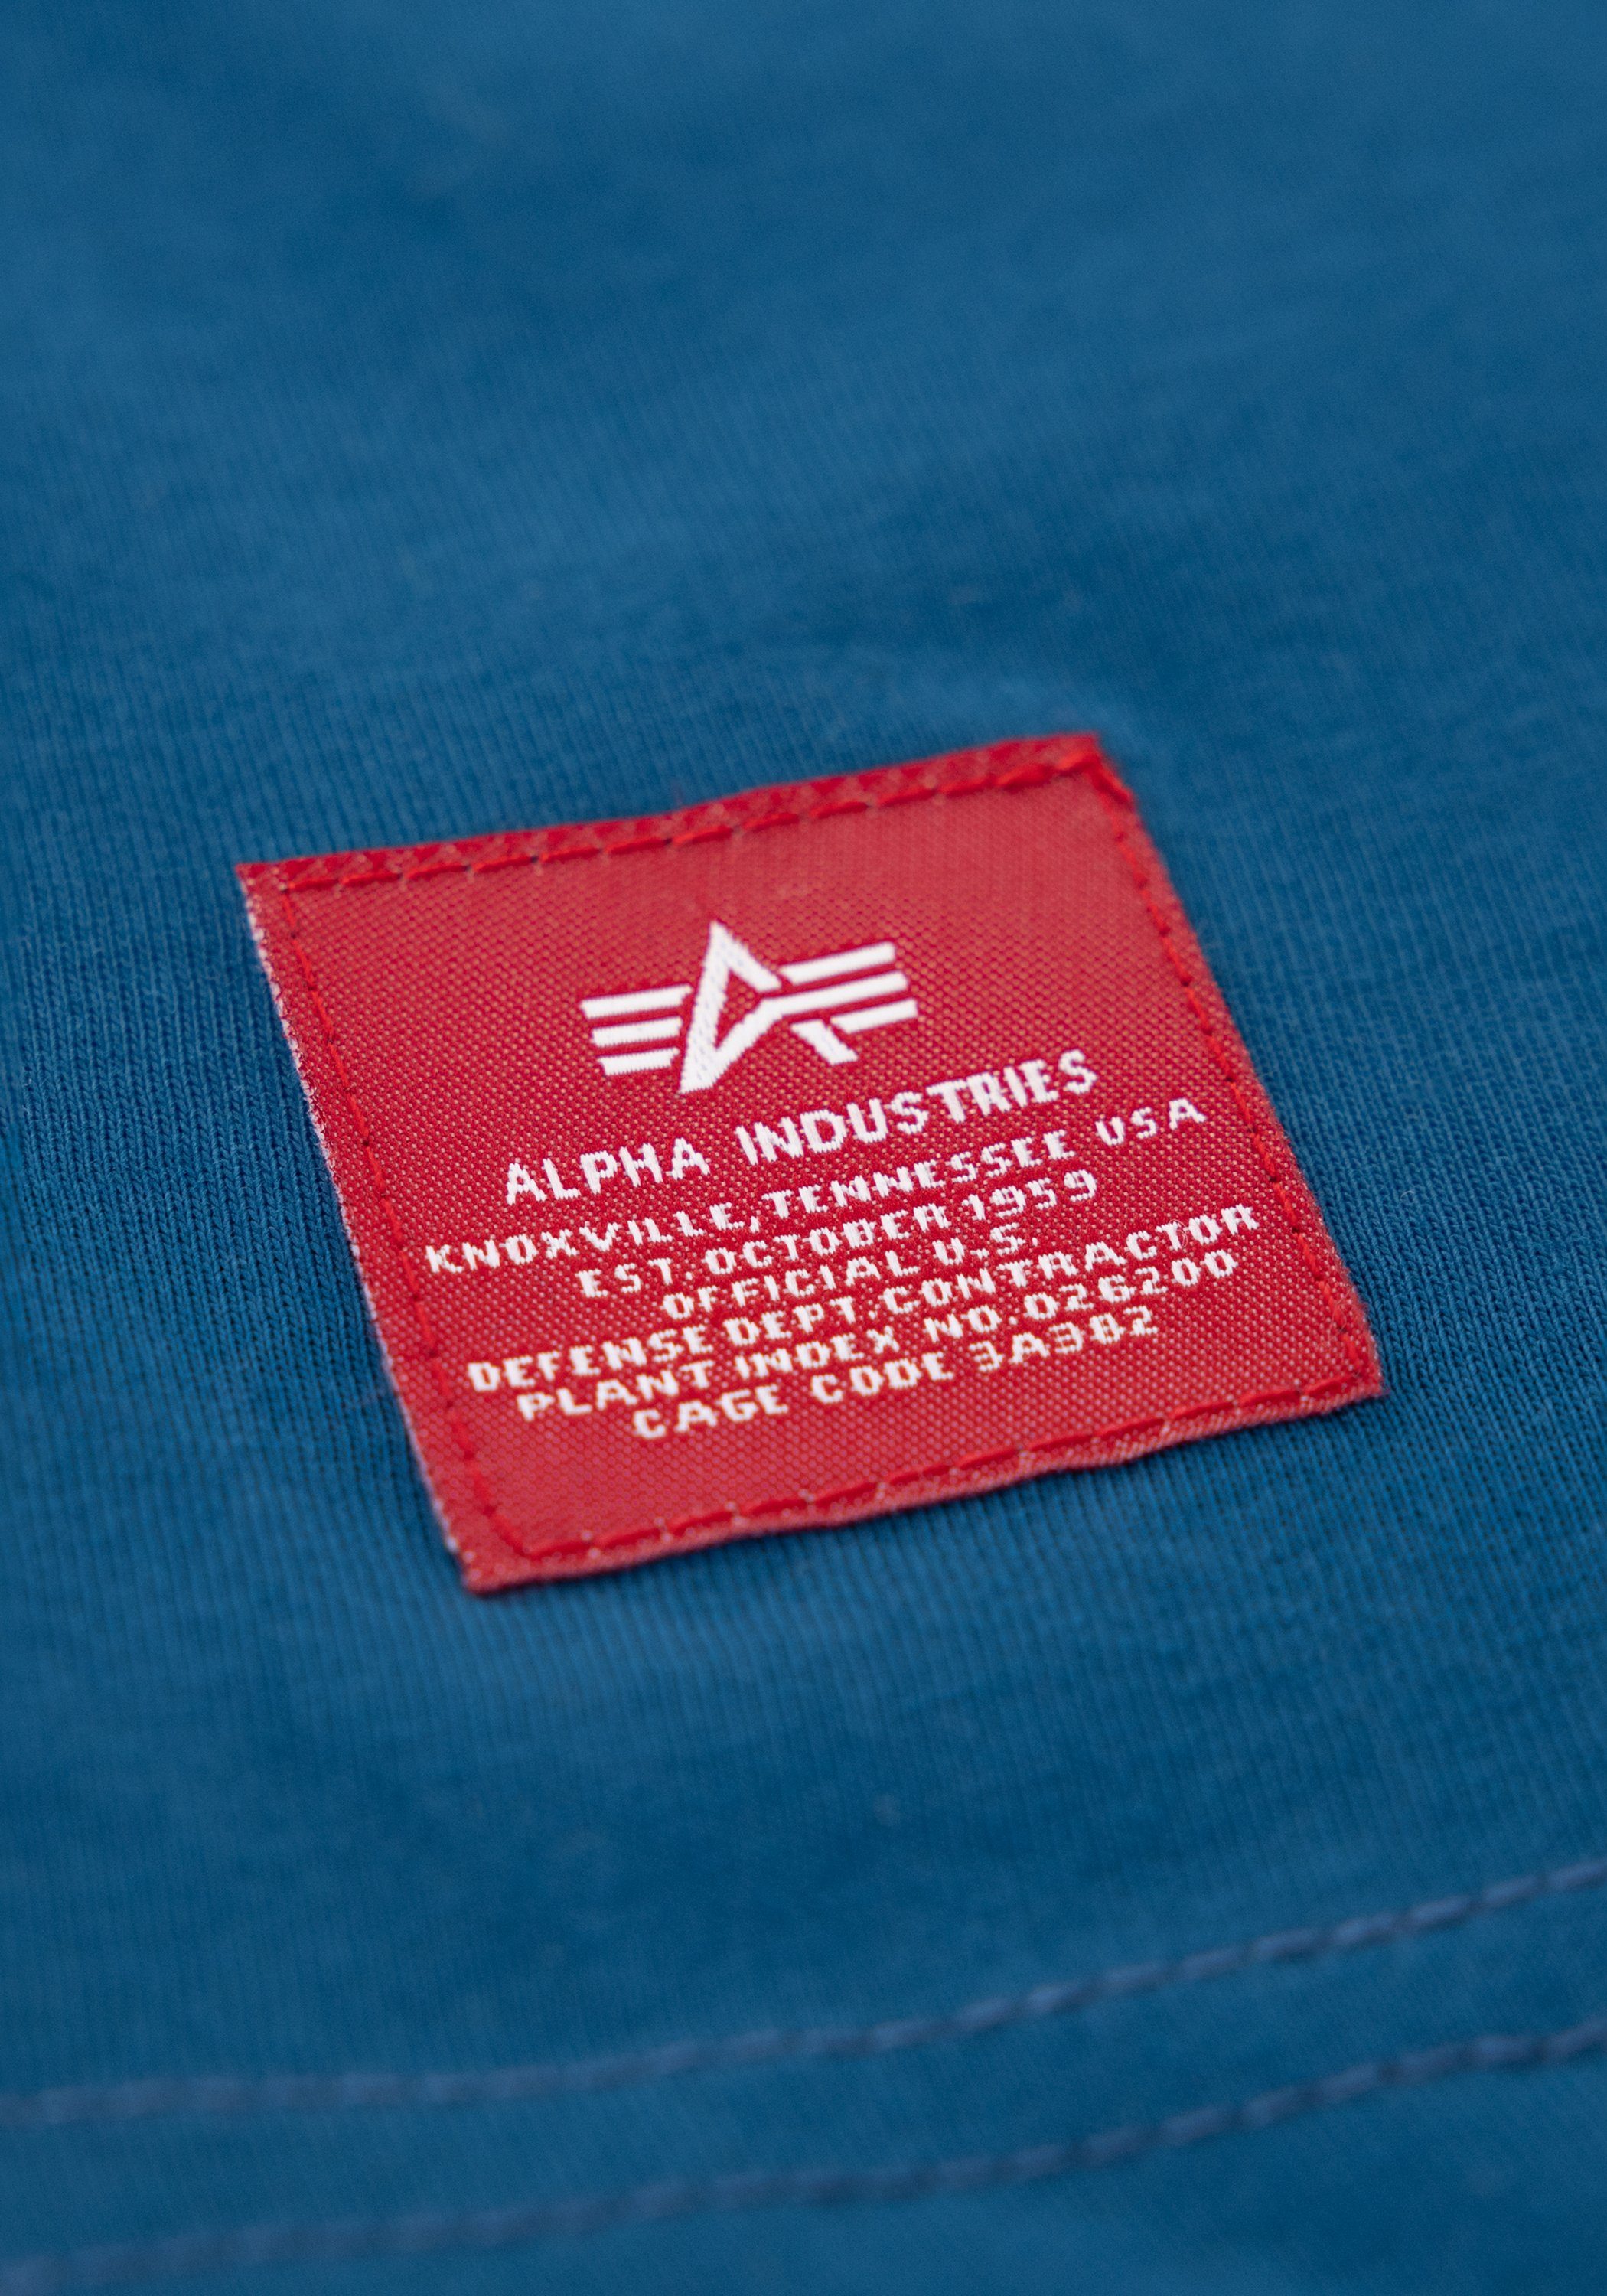 Alpha Industries T-shirt Kids T-Shirts Side Print T Kids Teens